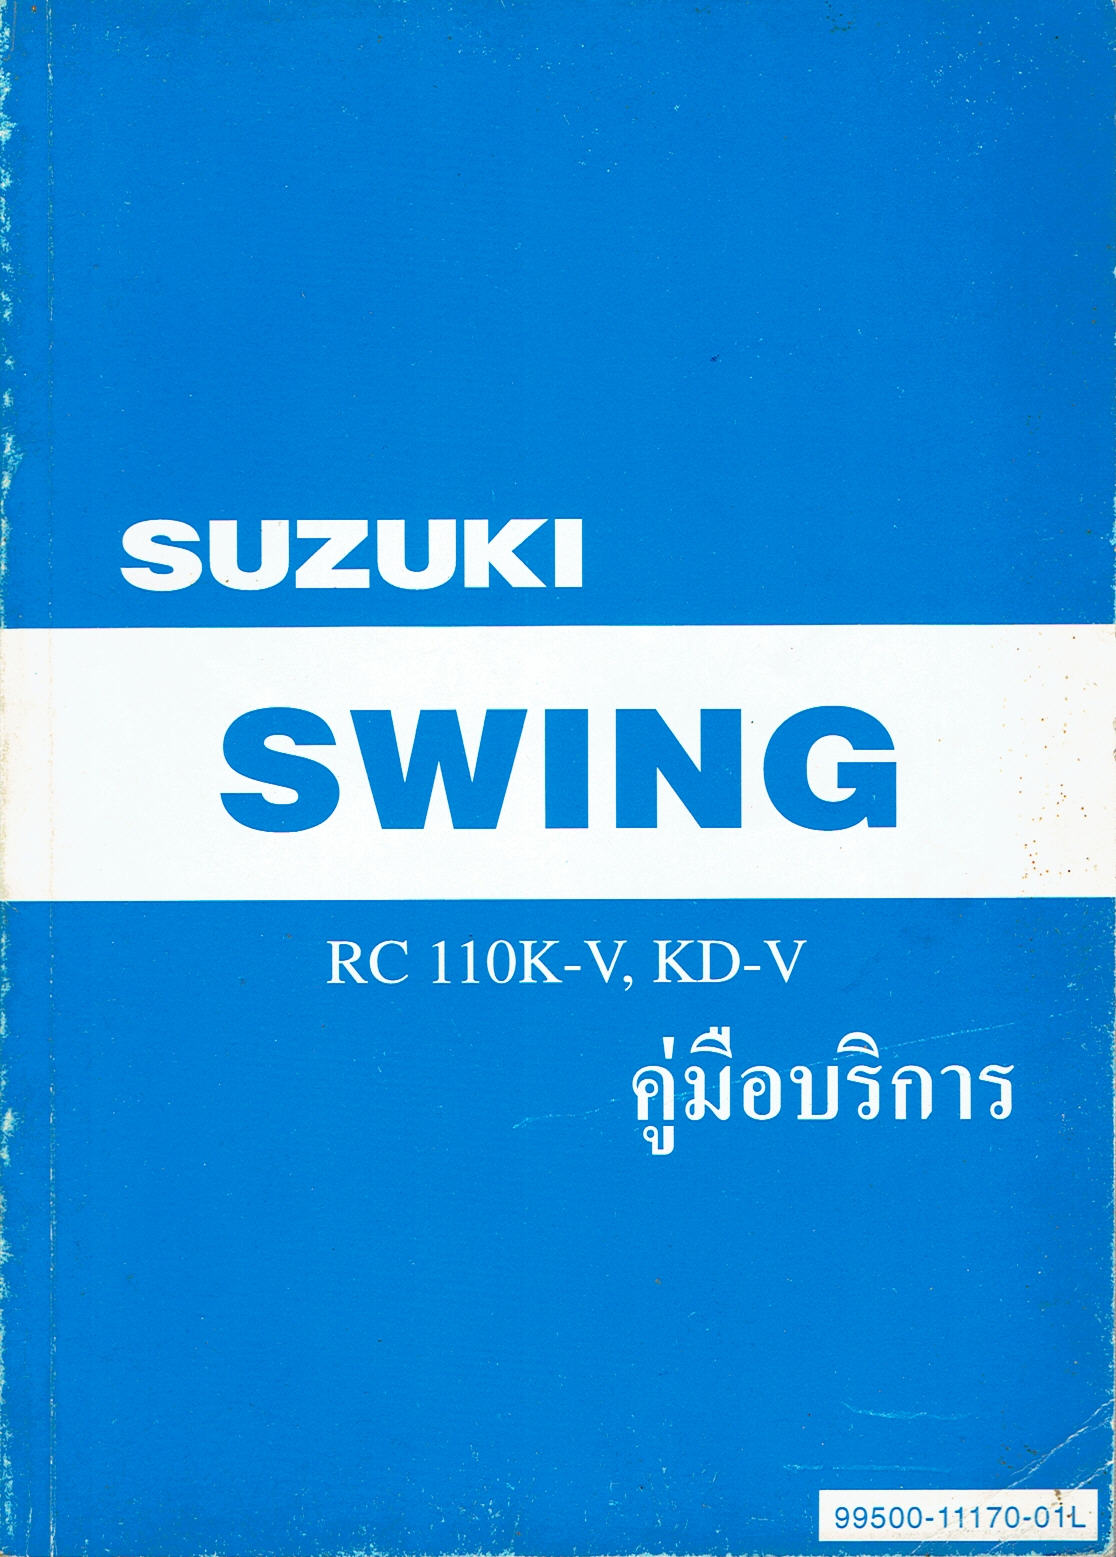 Suzuki Swing RC110K